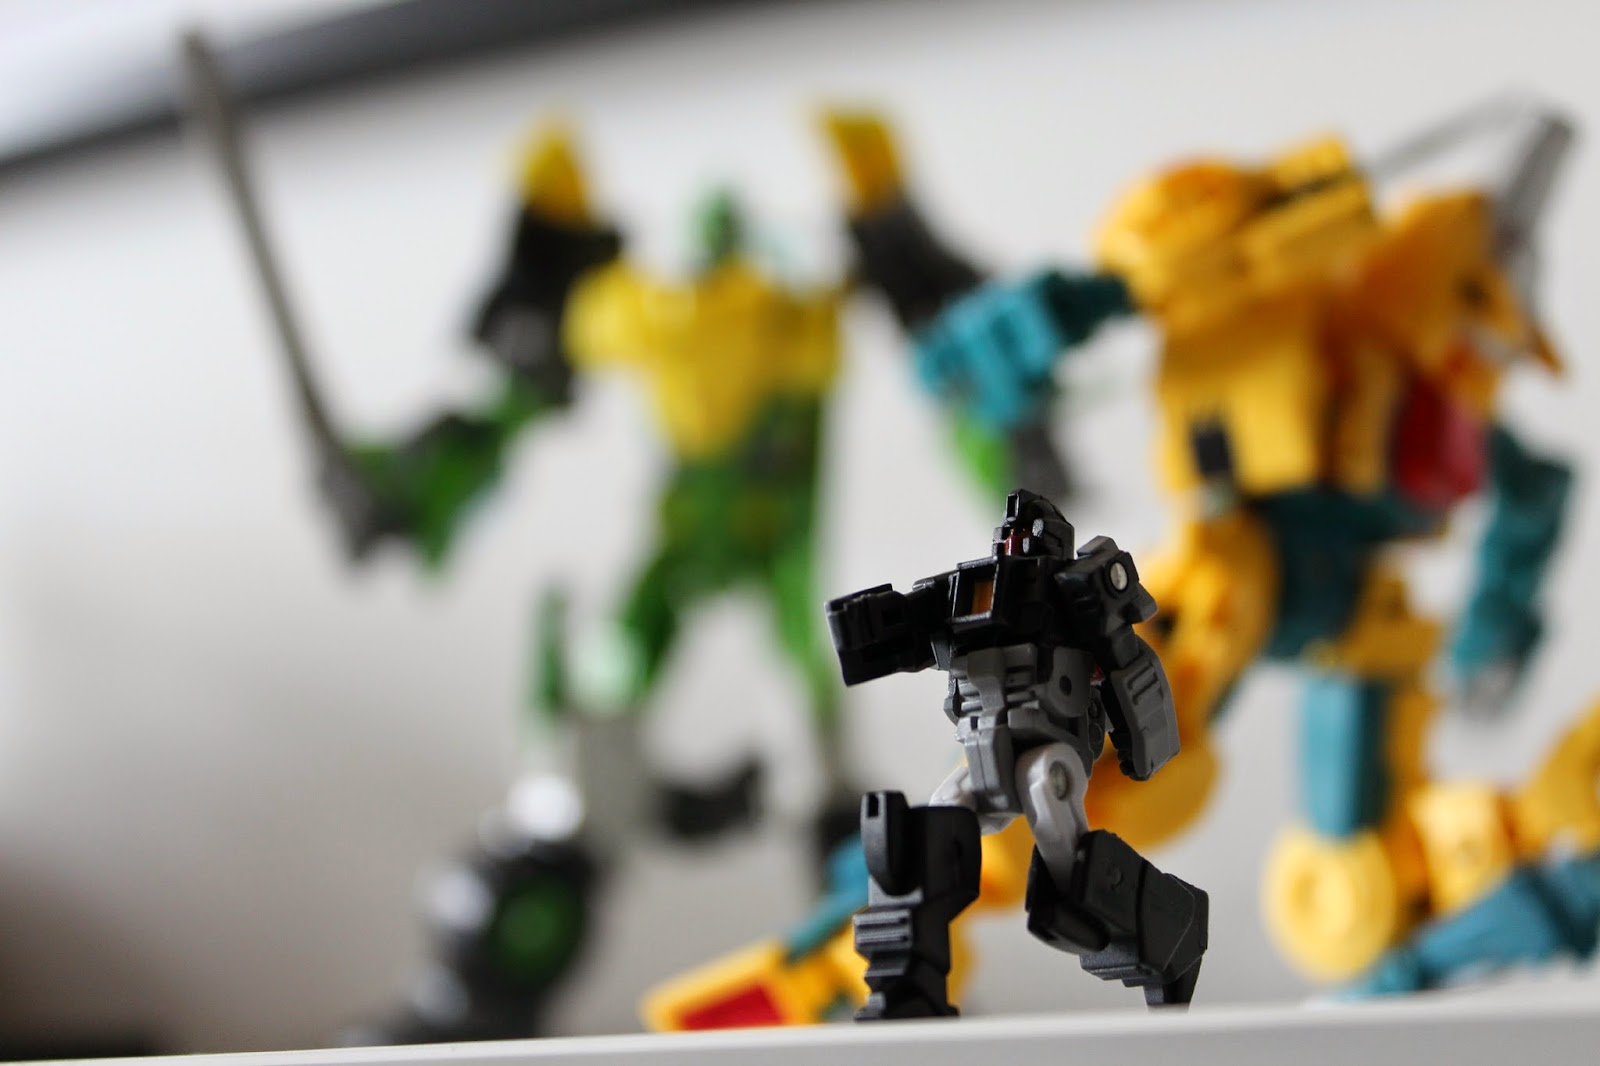 Transformers Voyager Springer Hasbro Autobot Fansproject Weirdwolf Quadruple U Monzo Decepticon Headmaster